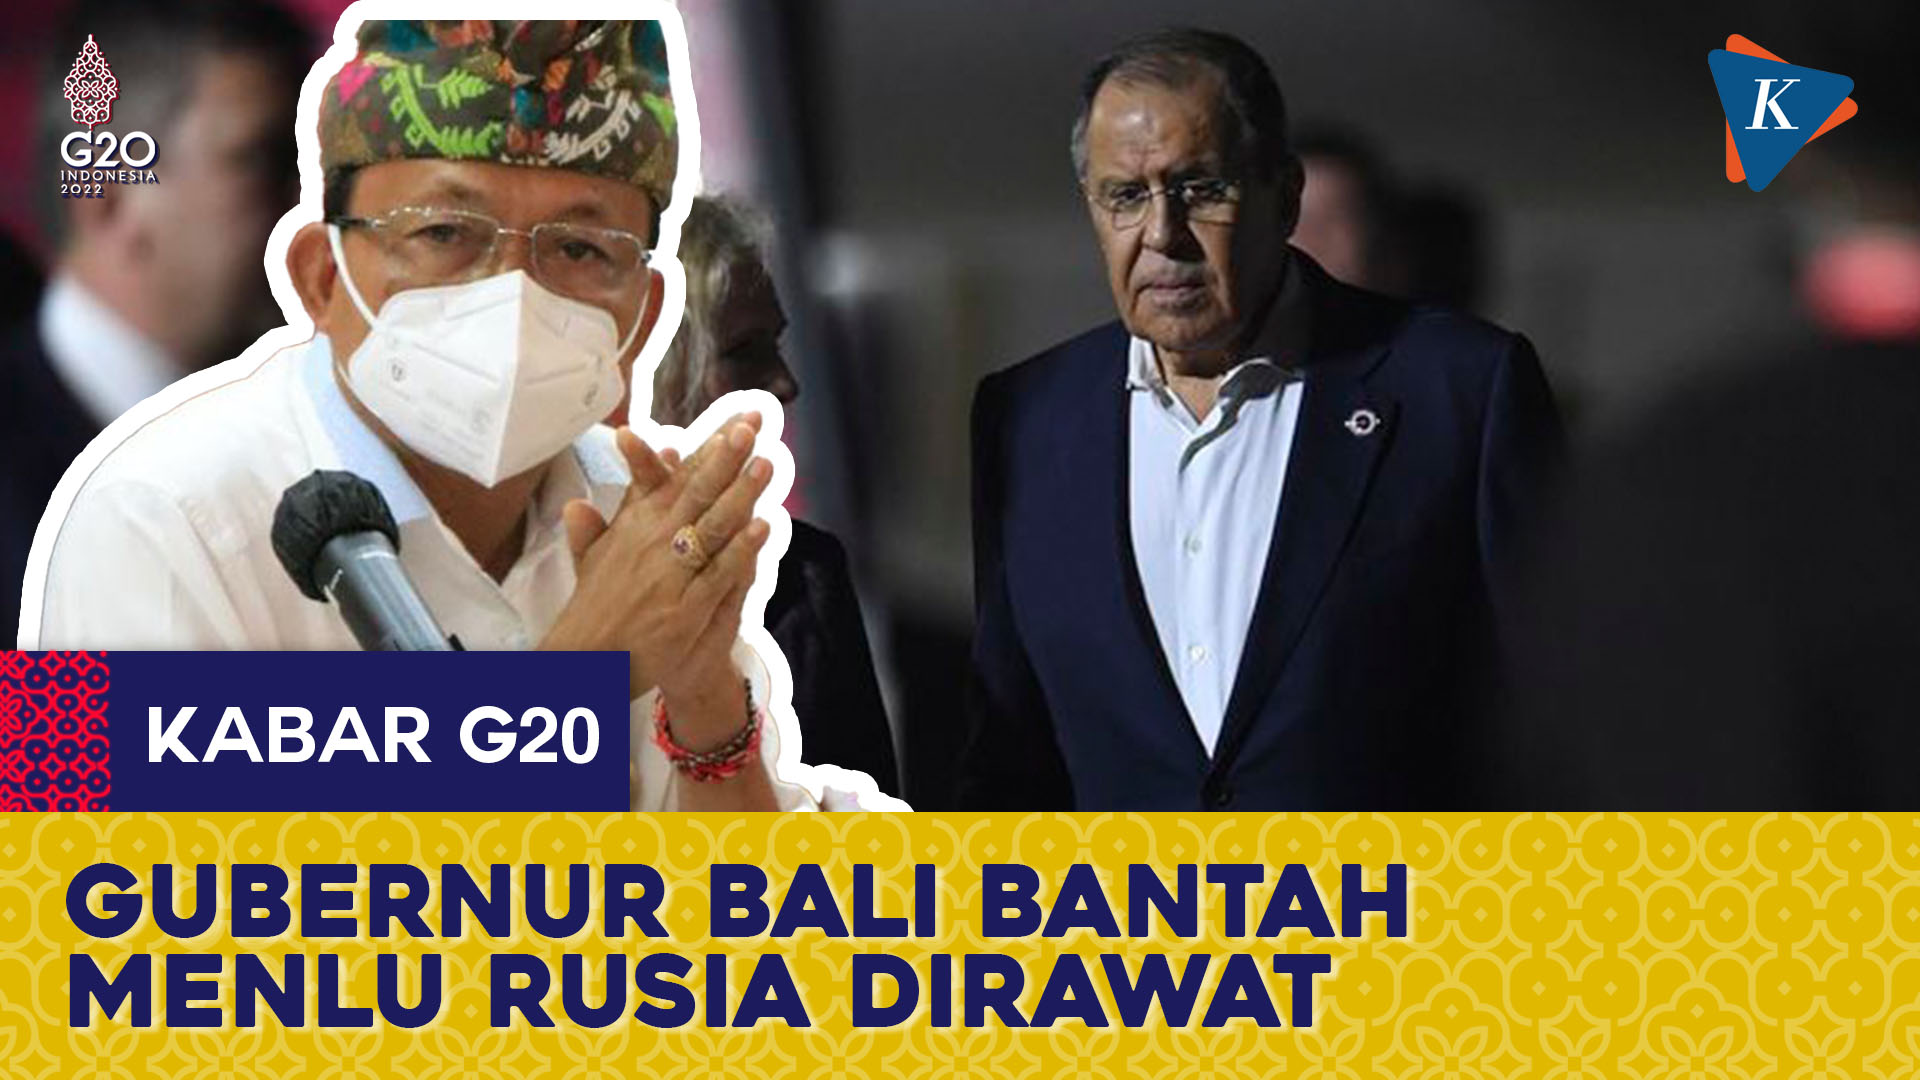 Gubernur Bali: Menlu Rusia Hanya Kontrol Kesehatan di RSUP Sanglah